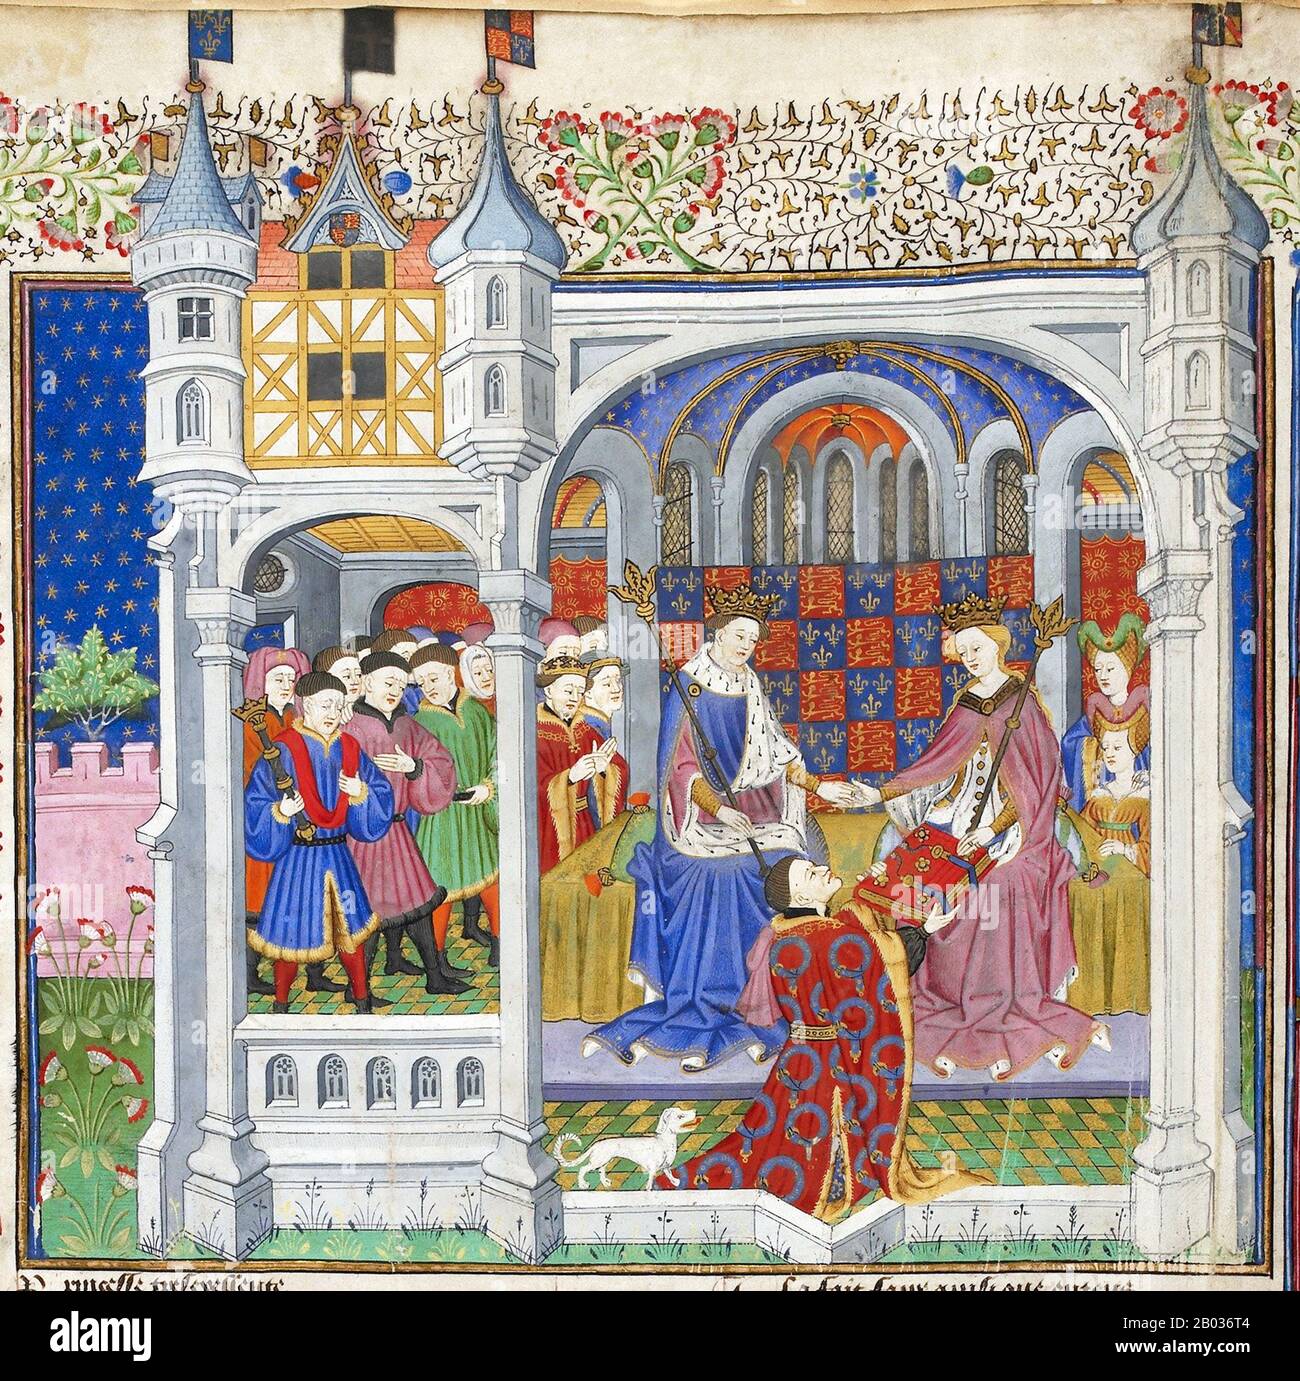 Le Talbot Shrewsbury Book (Londres, British Library Royal 15 E vi) est un très grand manuscrit richement éclairé réalisé à Rouen (Normandie) en 1444/5. Il a été présenté par John Talbot, premier comte de Shrewsbury (d. 1453) à la princesse française, Margaret d'Anjou (1430 - 1482), en l'honneur de son fitrothal au roi Henry VI (r. 1422-1461). Il contient une collection unique de quinze textes en français, y compris des chansons de geste, des romances chevalriques, des traités sur la guerre et la chevalerie, et enfin les Statues de l'ordre du Garter. Le travail est un excellent exemple de la production de livres à Rouen au milieu Banque D'Images